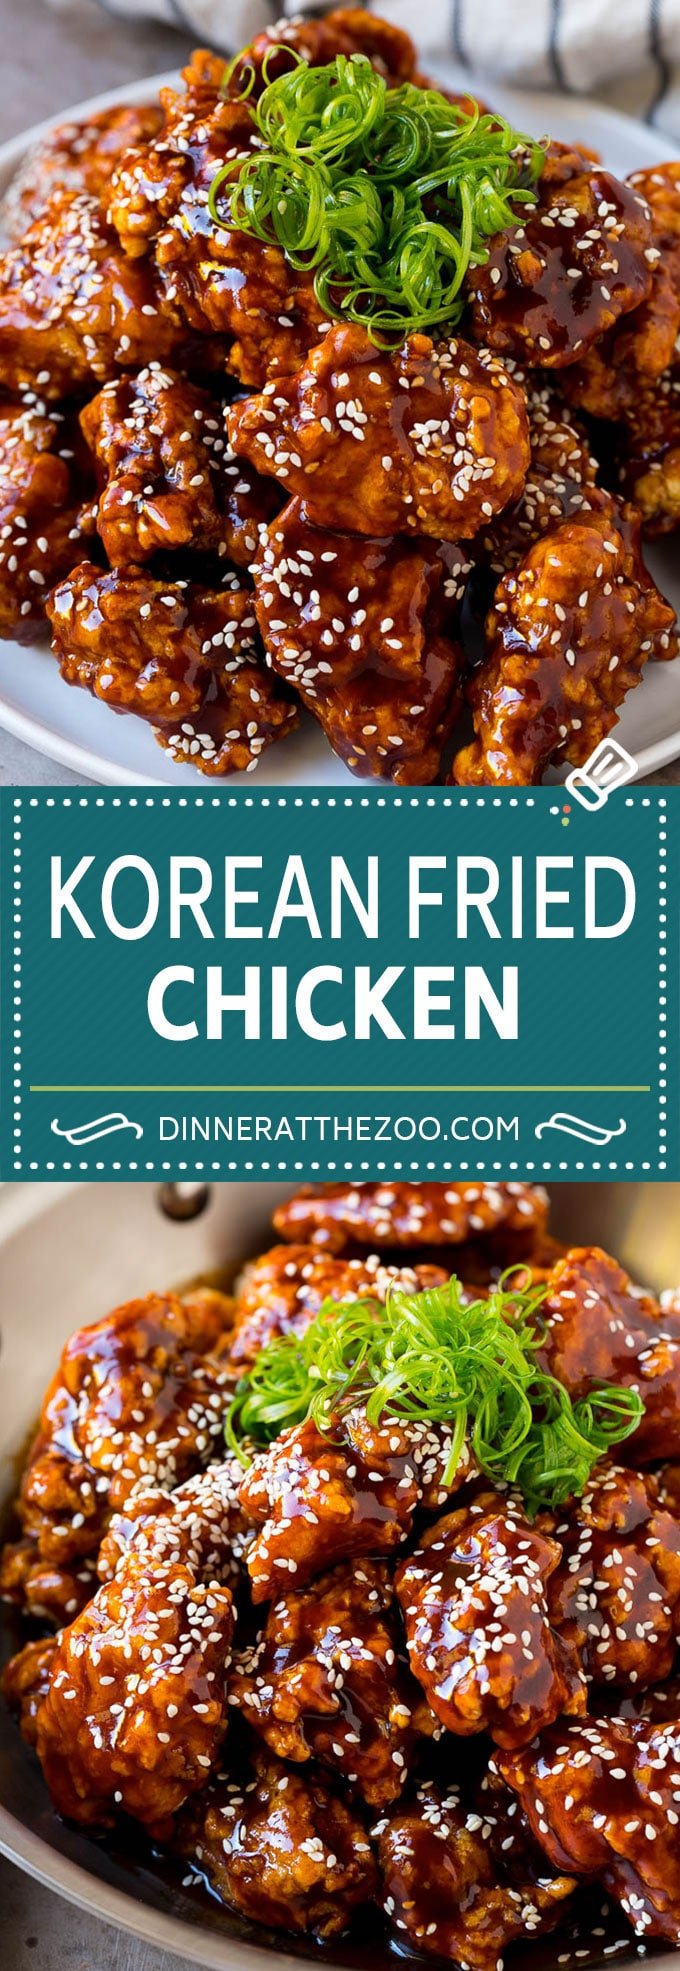 Korean Fried Chicken Recipe | Fried Chicken | Korean Chicken #chicken #friedchicken #appetizer #dinner #dinneratthezoo